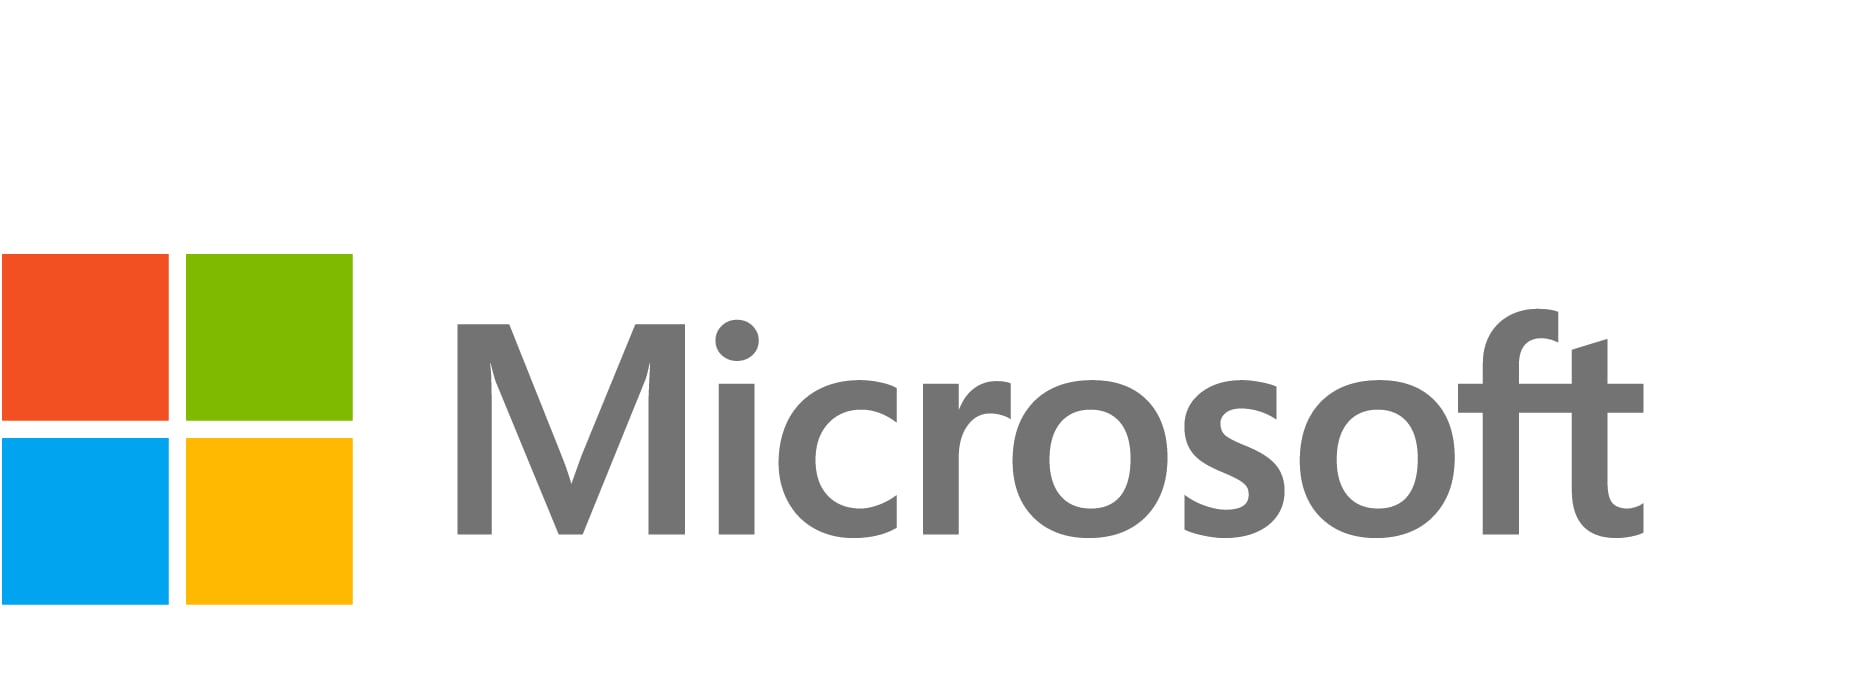 Microsoft Office Professional Plus - assurance logiciel - 1 périphérique